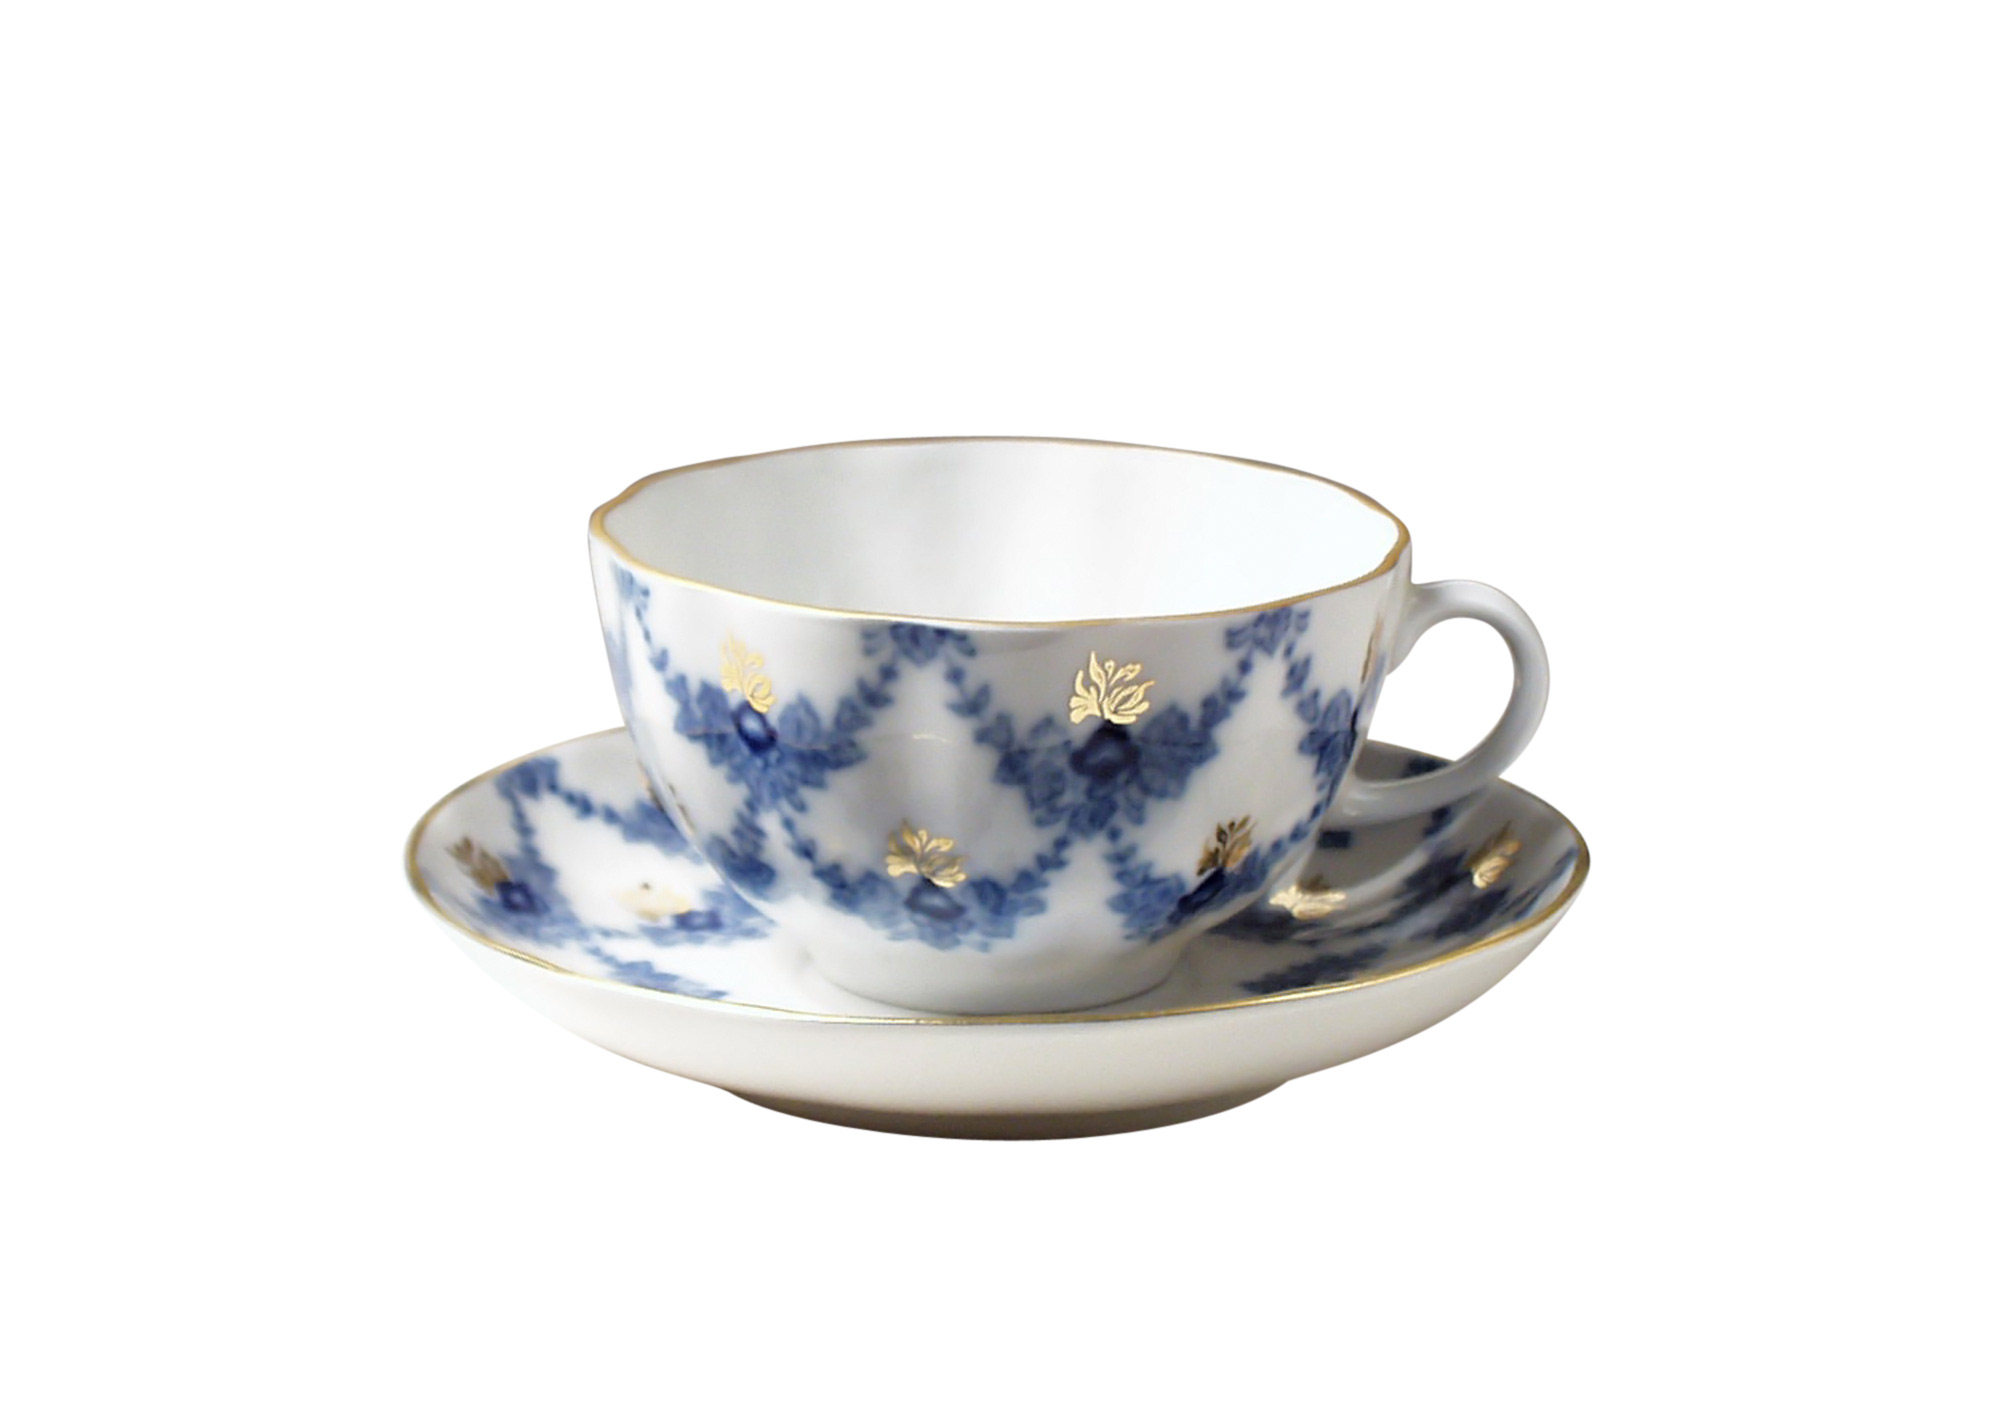 Buy Evening Time Tea Cup and Saucer at GoldenCockerel.com